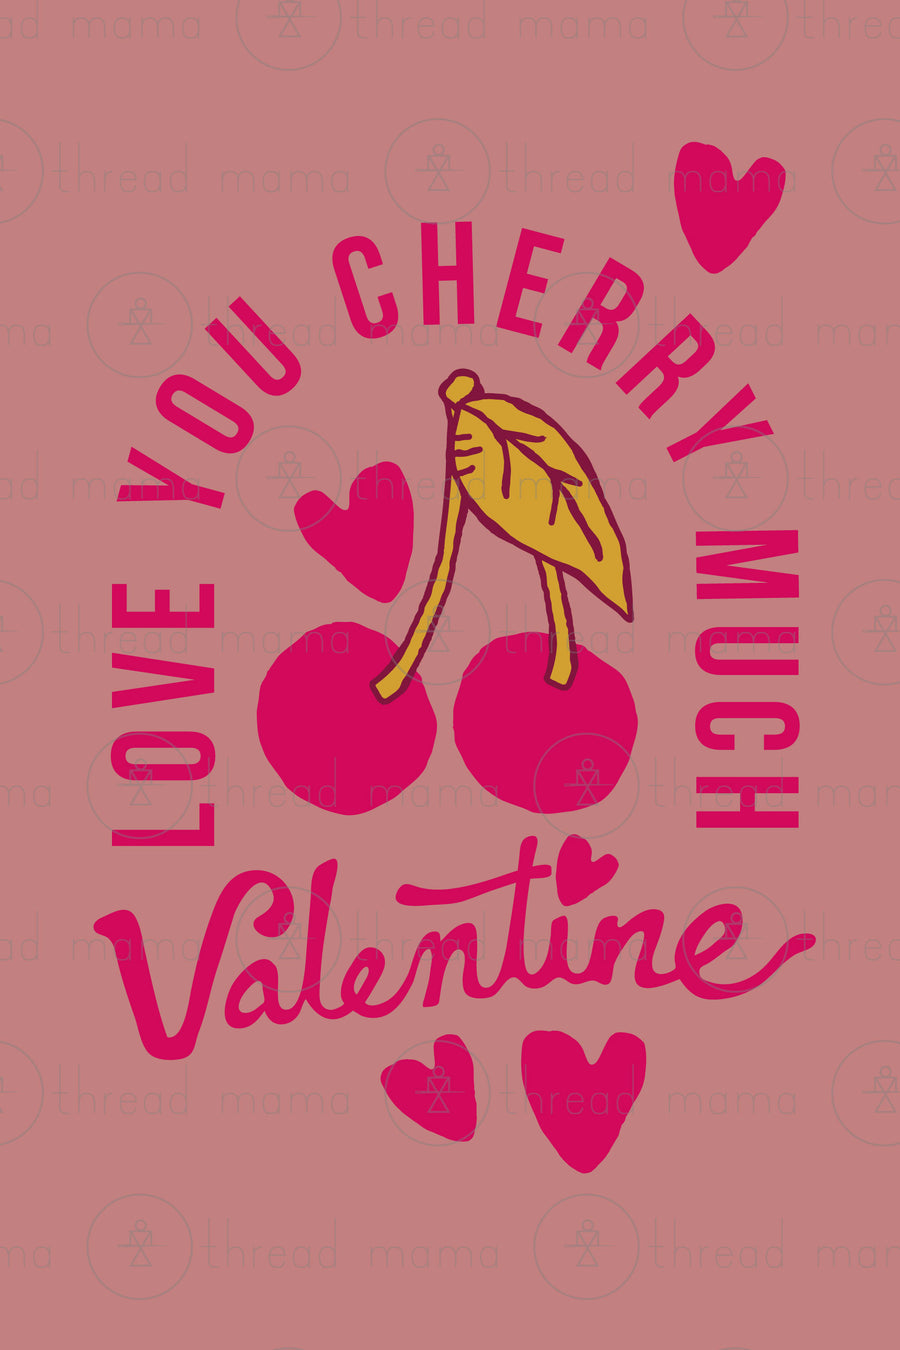 Love You Cherry Much Valentine